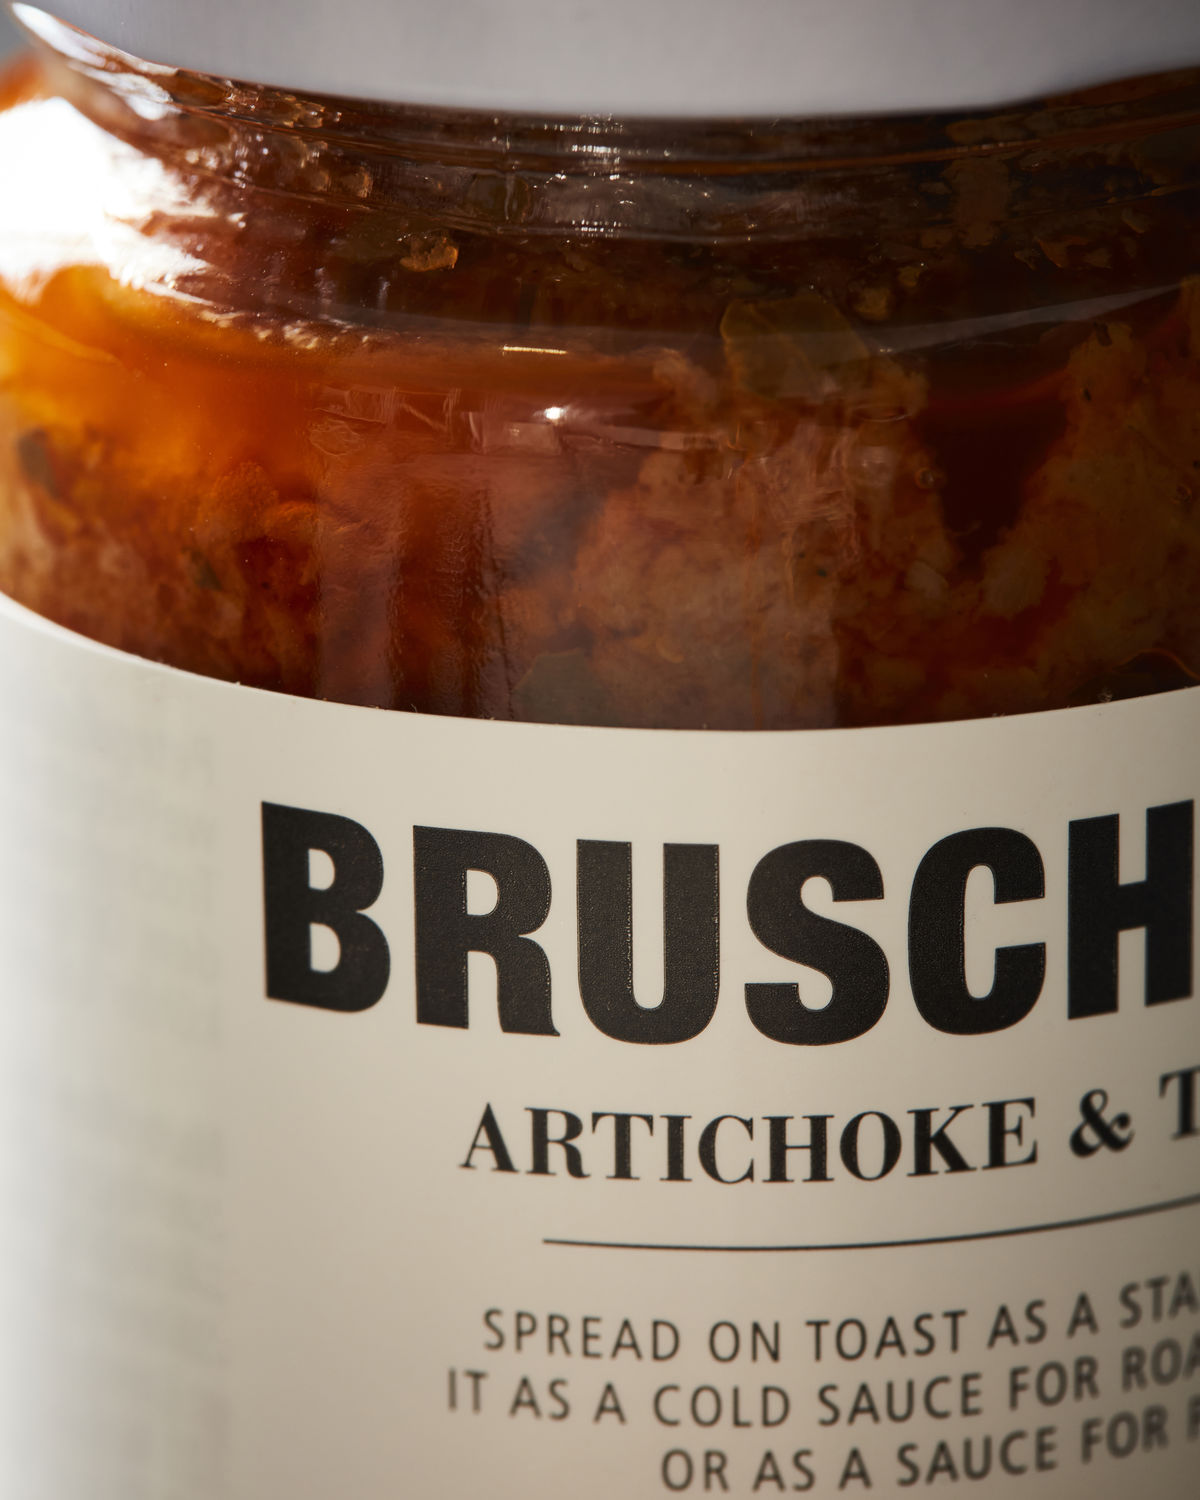 Bruschetta mit Artischocke & Tomate